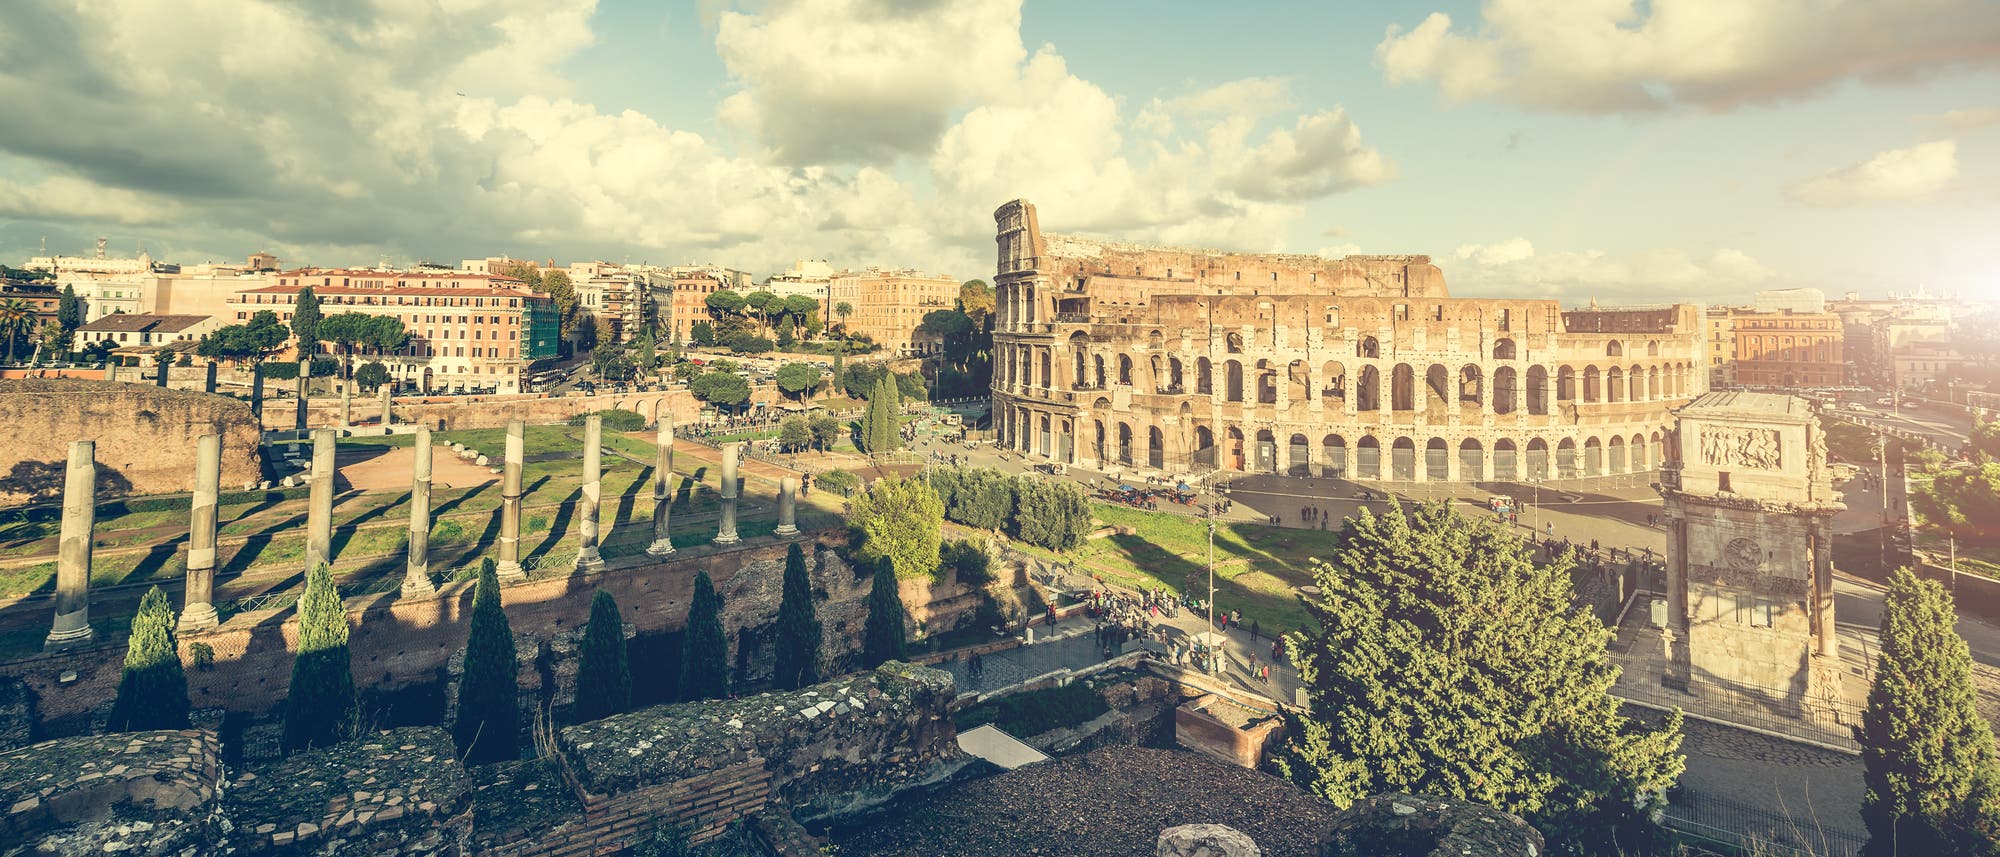 Antike Säulen am Colosseum in Rom